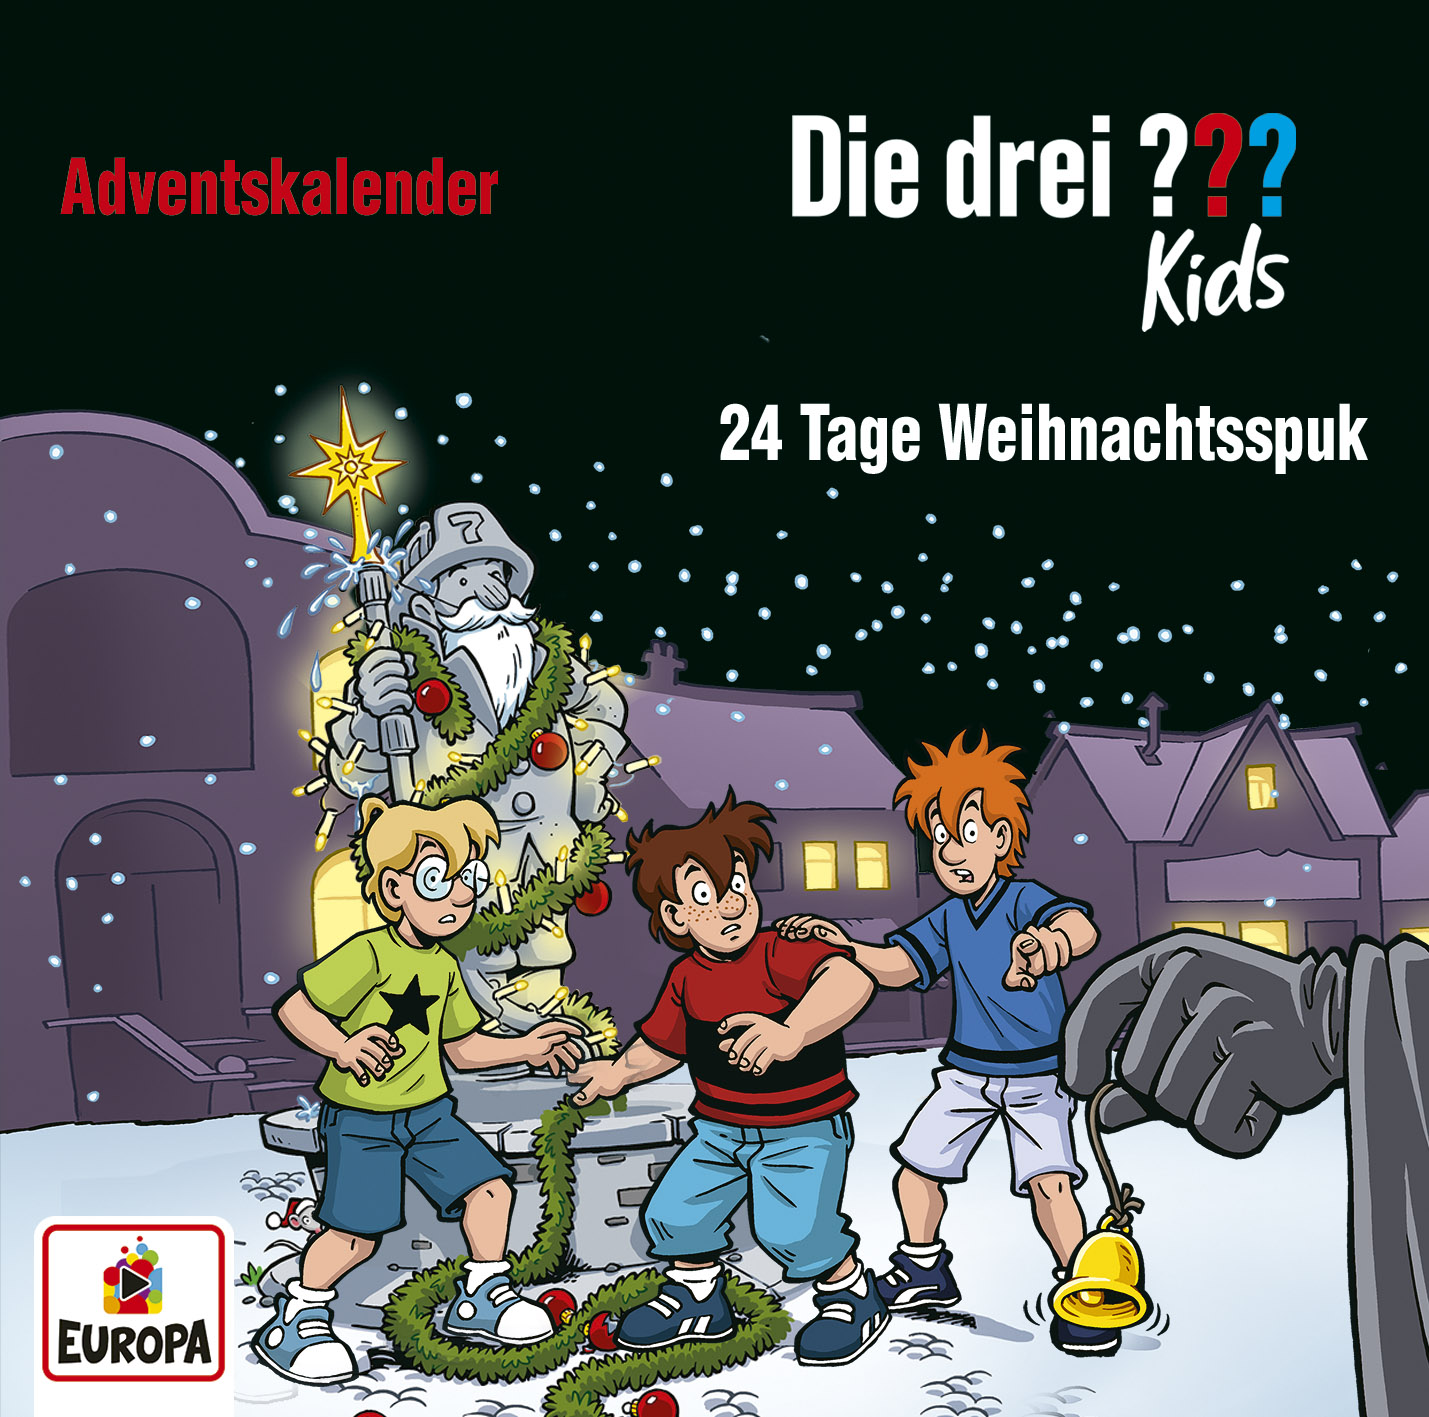 Die Drei ??? (Fragezeichen) Kids, Hörspiel-Special: 24 Tage Weihnachtsspuk (Adventskalender)